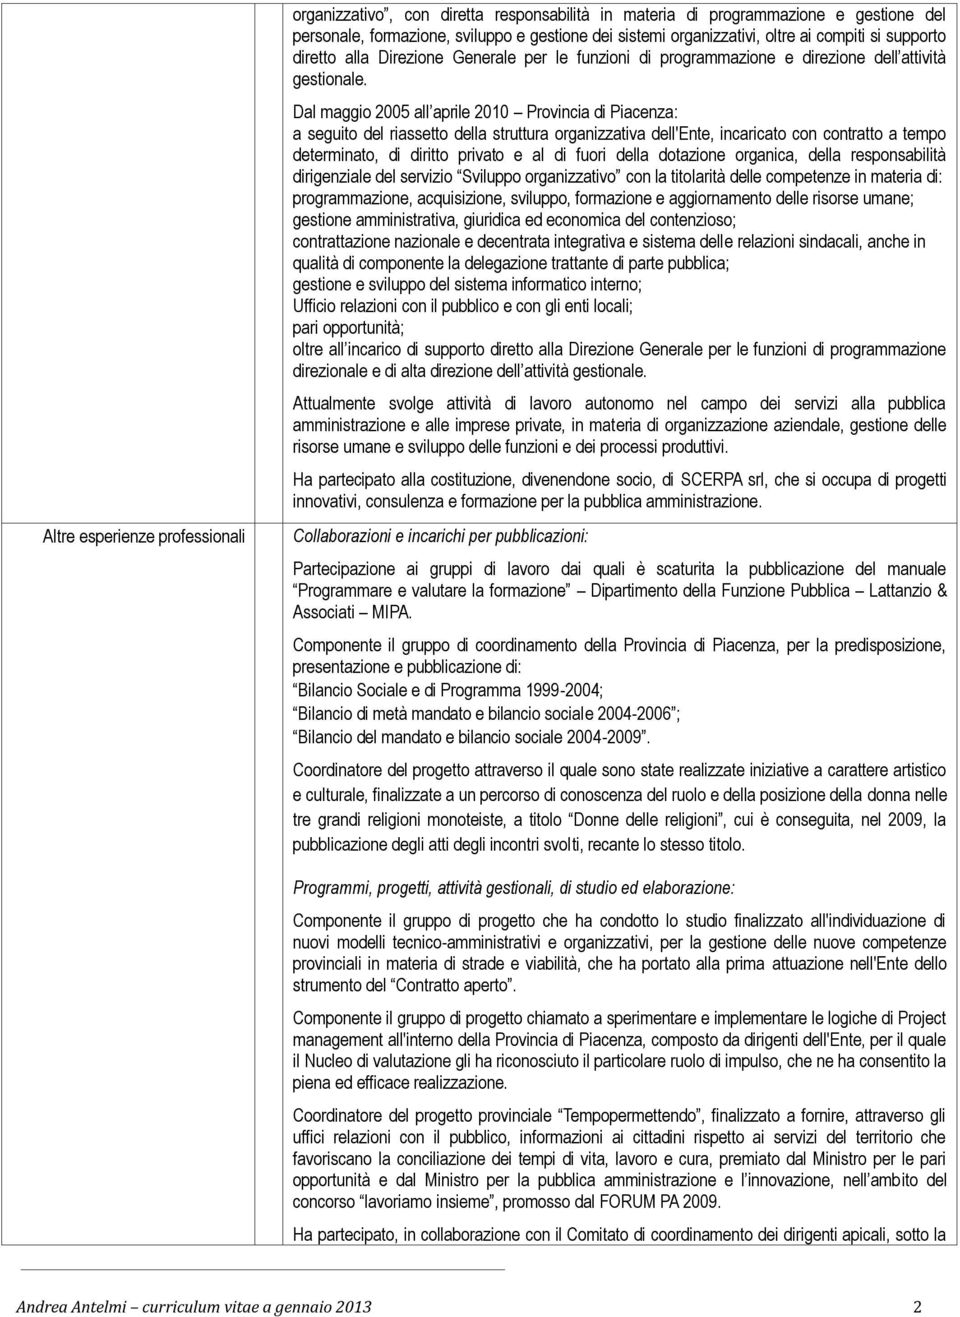 Dal maggio 2005 all aprile 2010 Provincia di Piacenza: a seguito del riassetto della struttura organizzativa dell'ente, incaricato con contratto a tempo determinato, di diritto privato e al di fuori